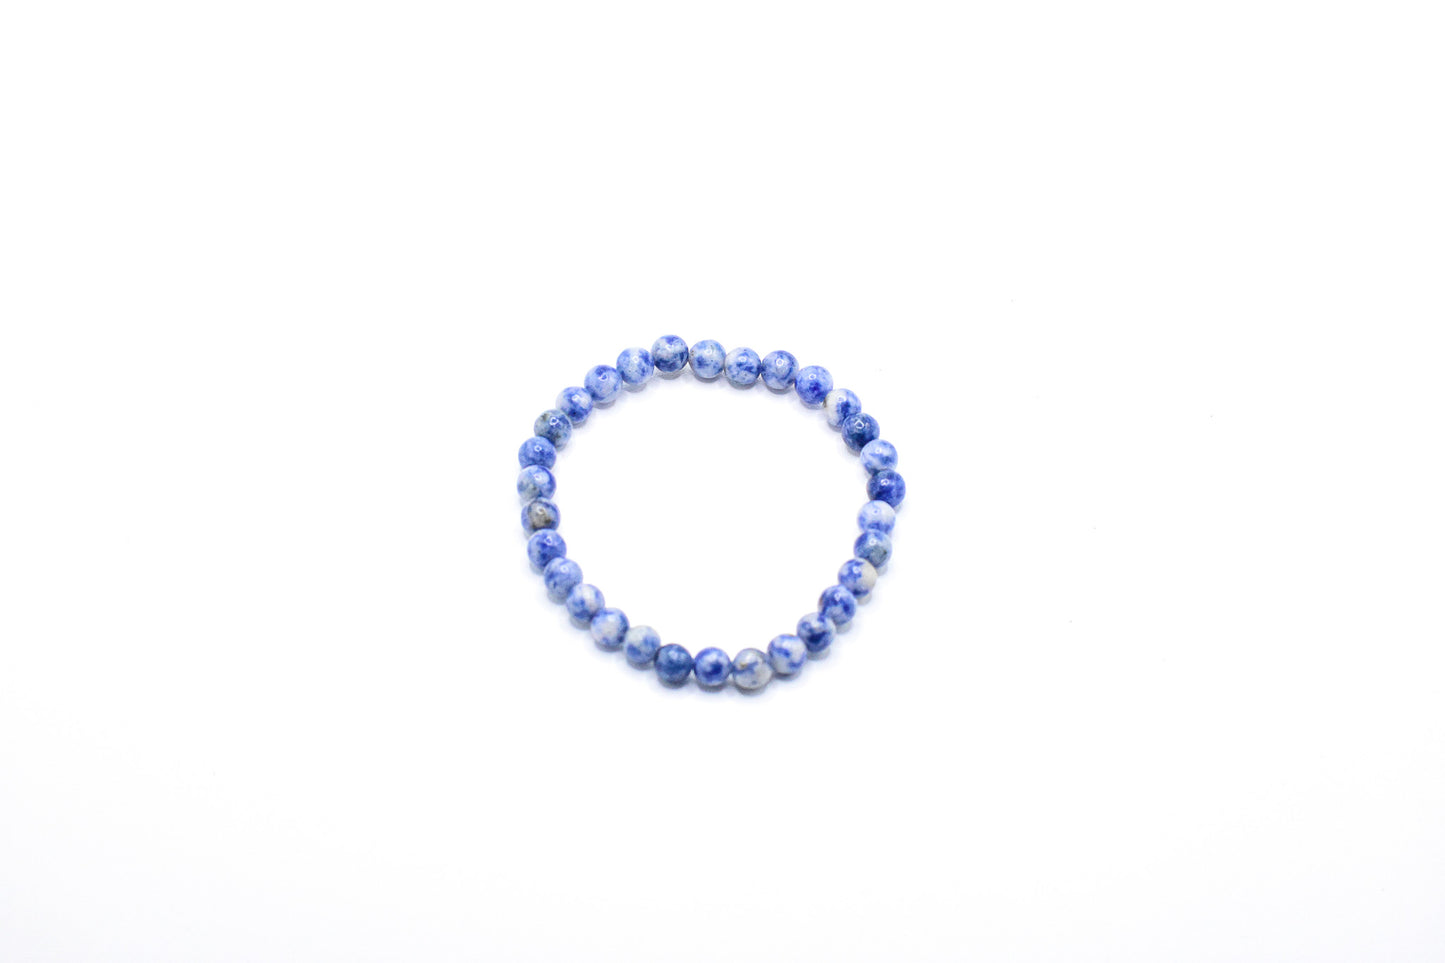 Lapis Lazuli Crystal Healing Bracelet